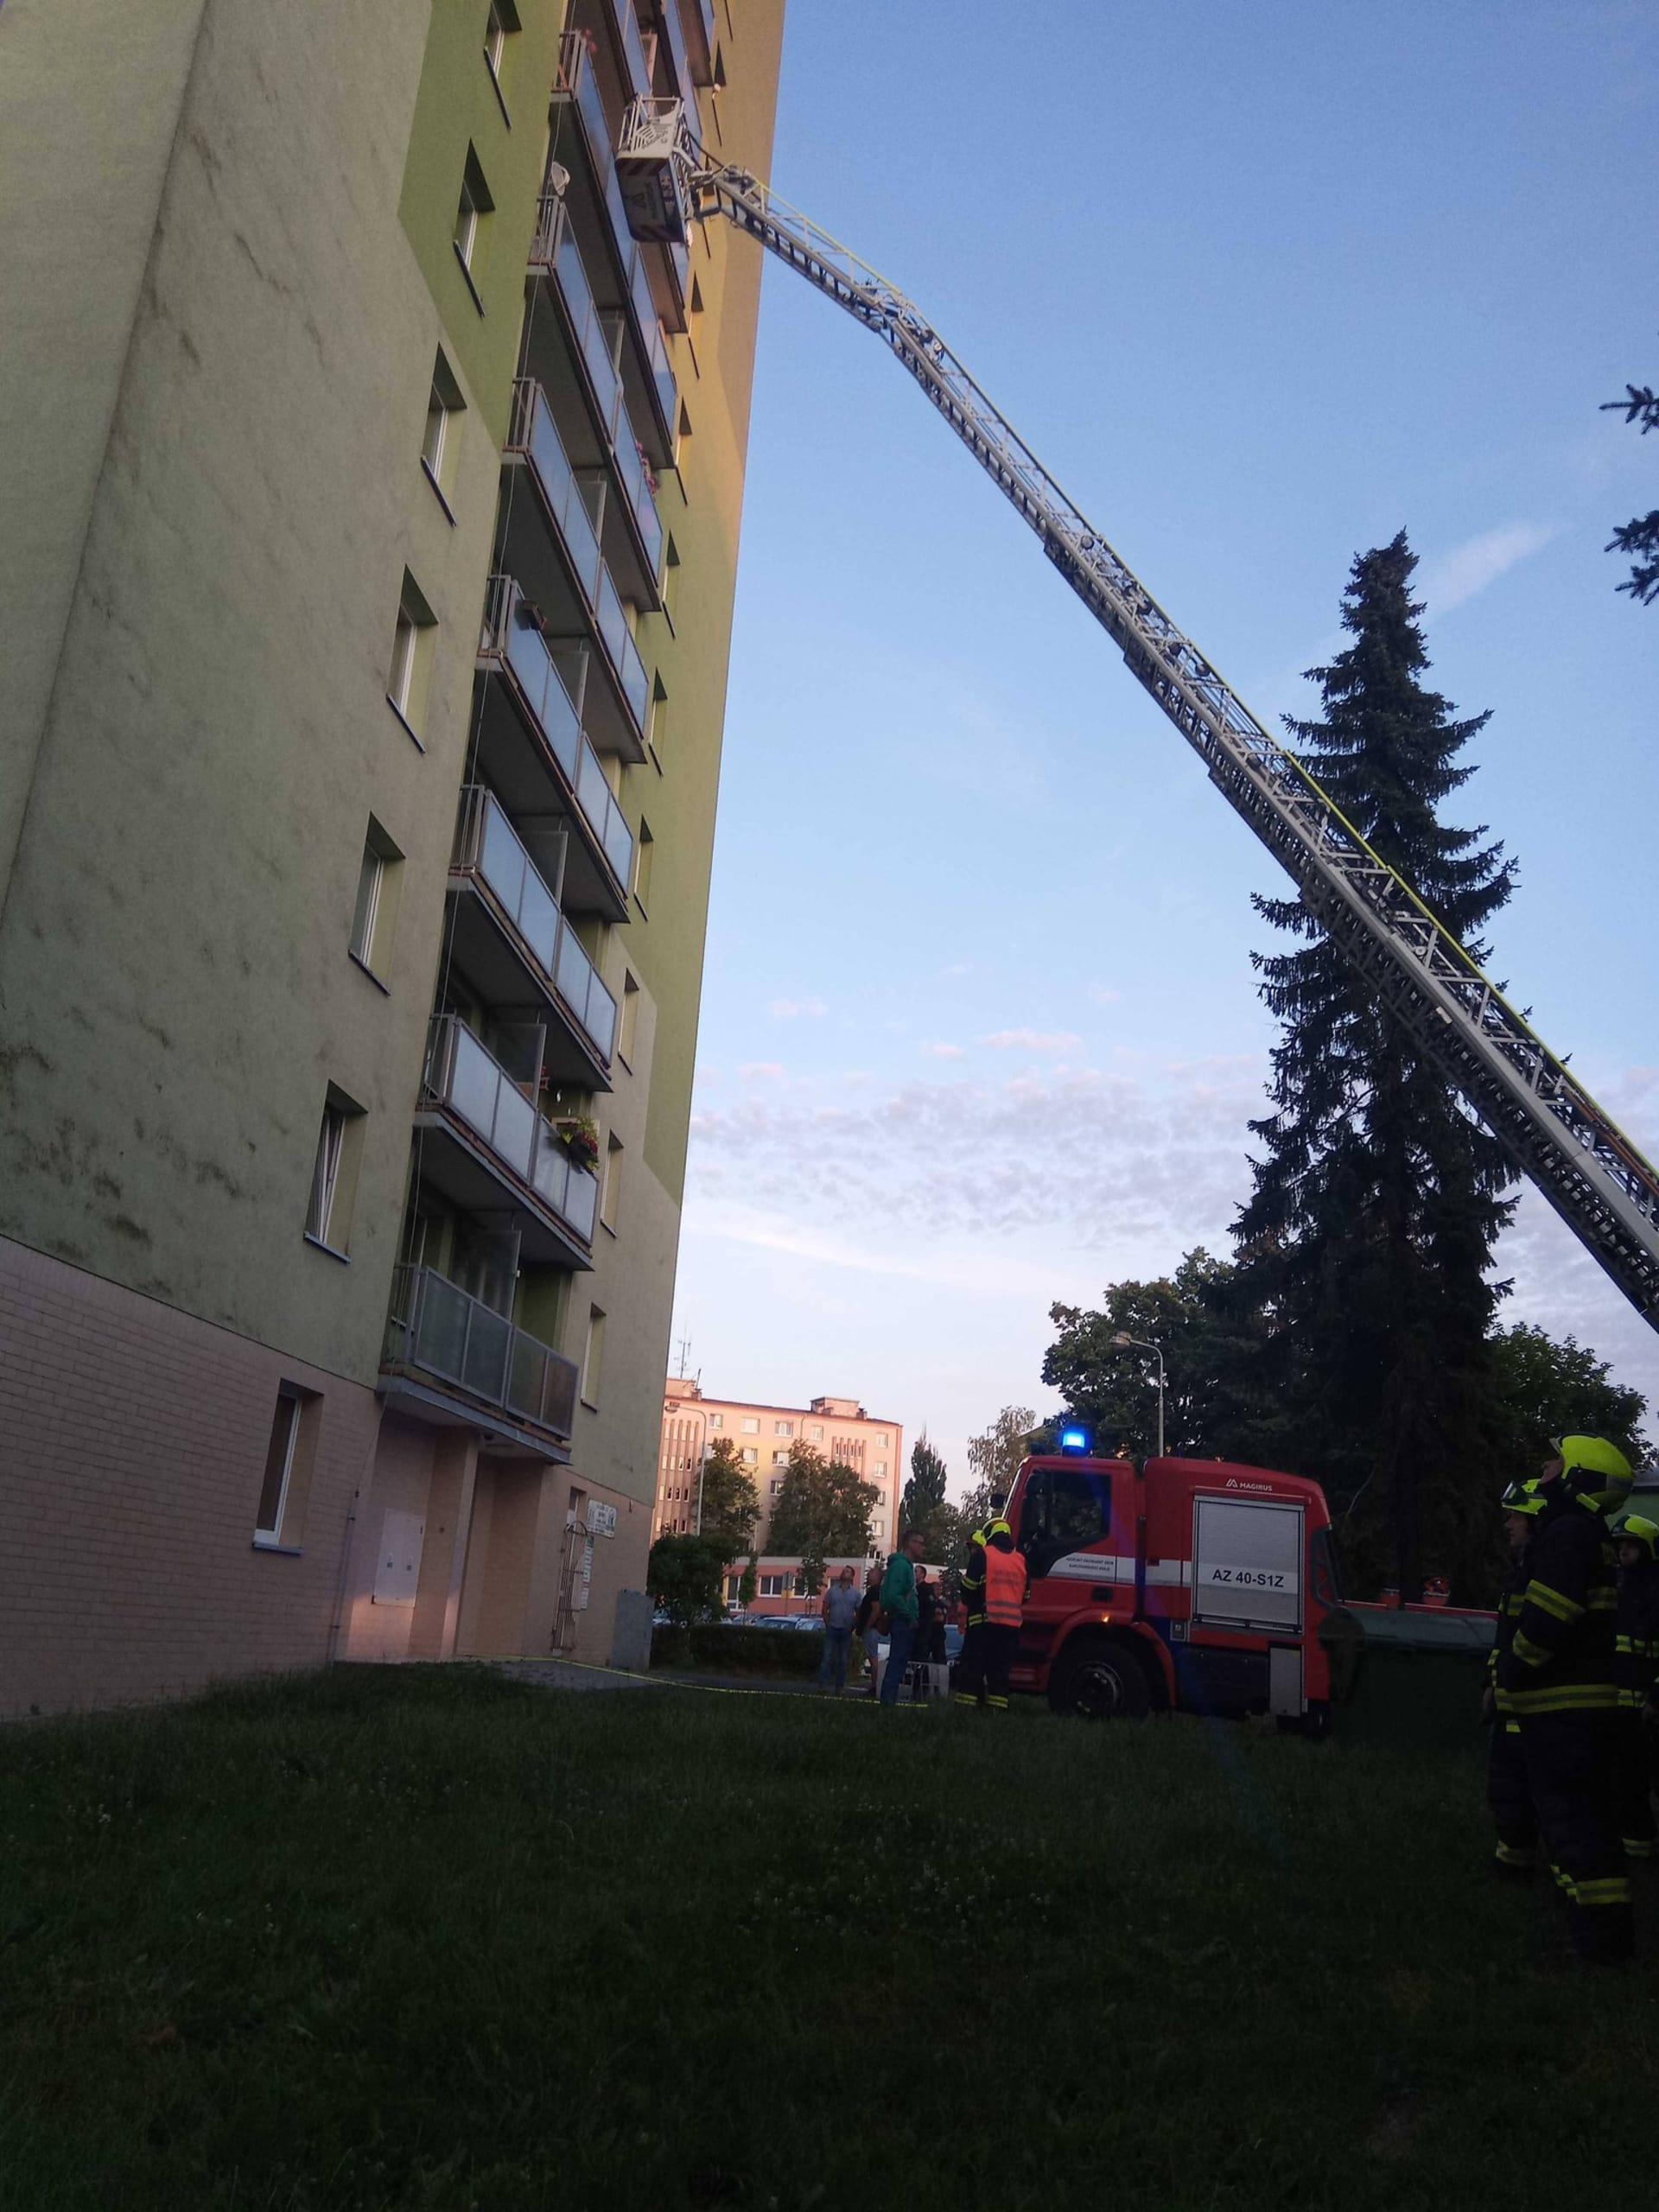 Hasiči v sobotu ráno zasahovali u požáru bytu v osmém patře. Muže zachránil přivolaný policista